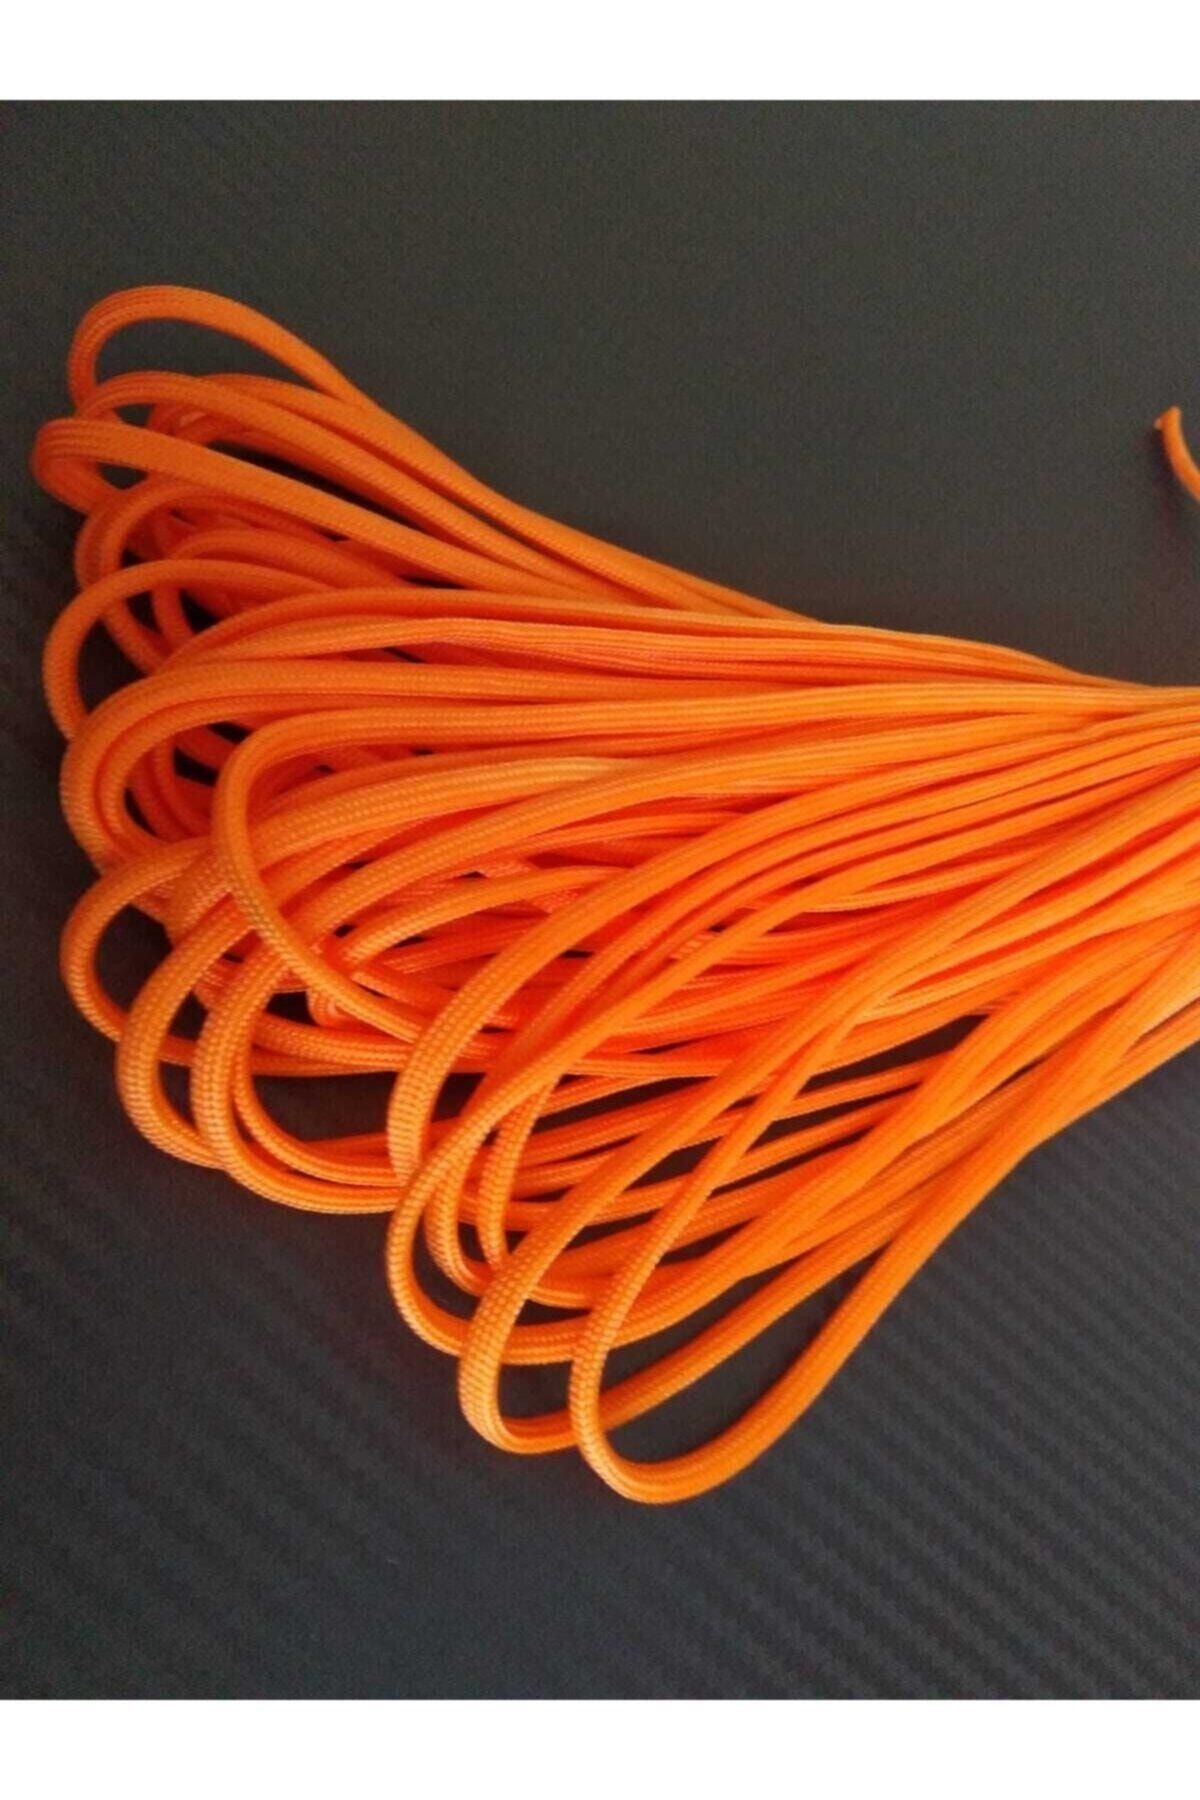 PARACORD DÜNYASI Suede Ribbon Rope, 3mm Width, (5 METERS LONG) - Trendyol